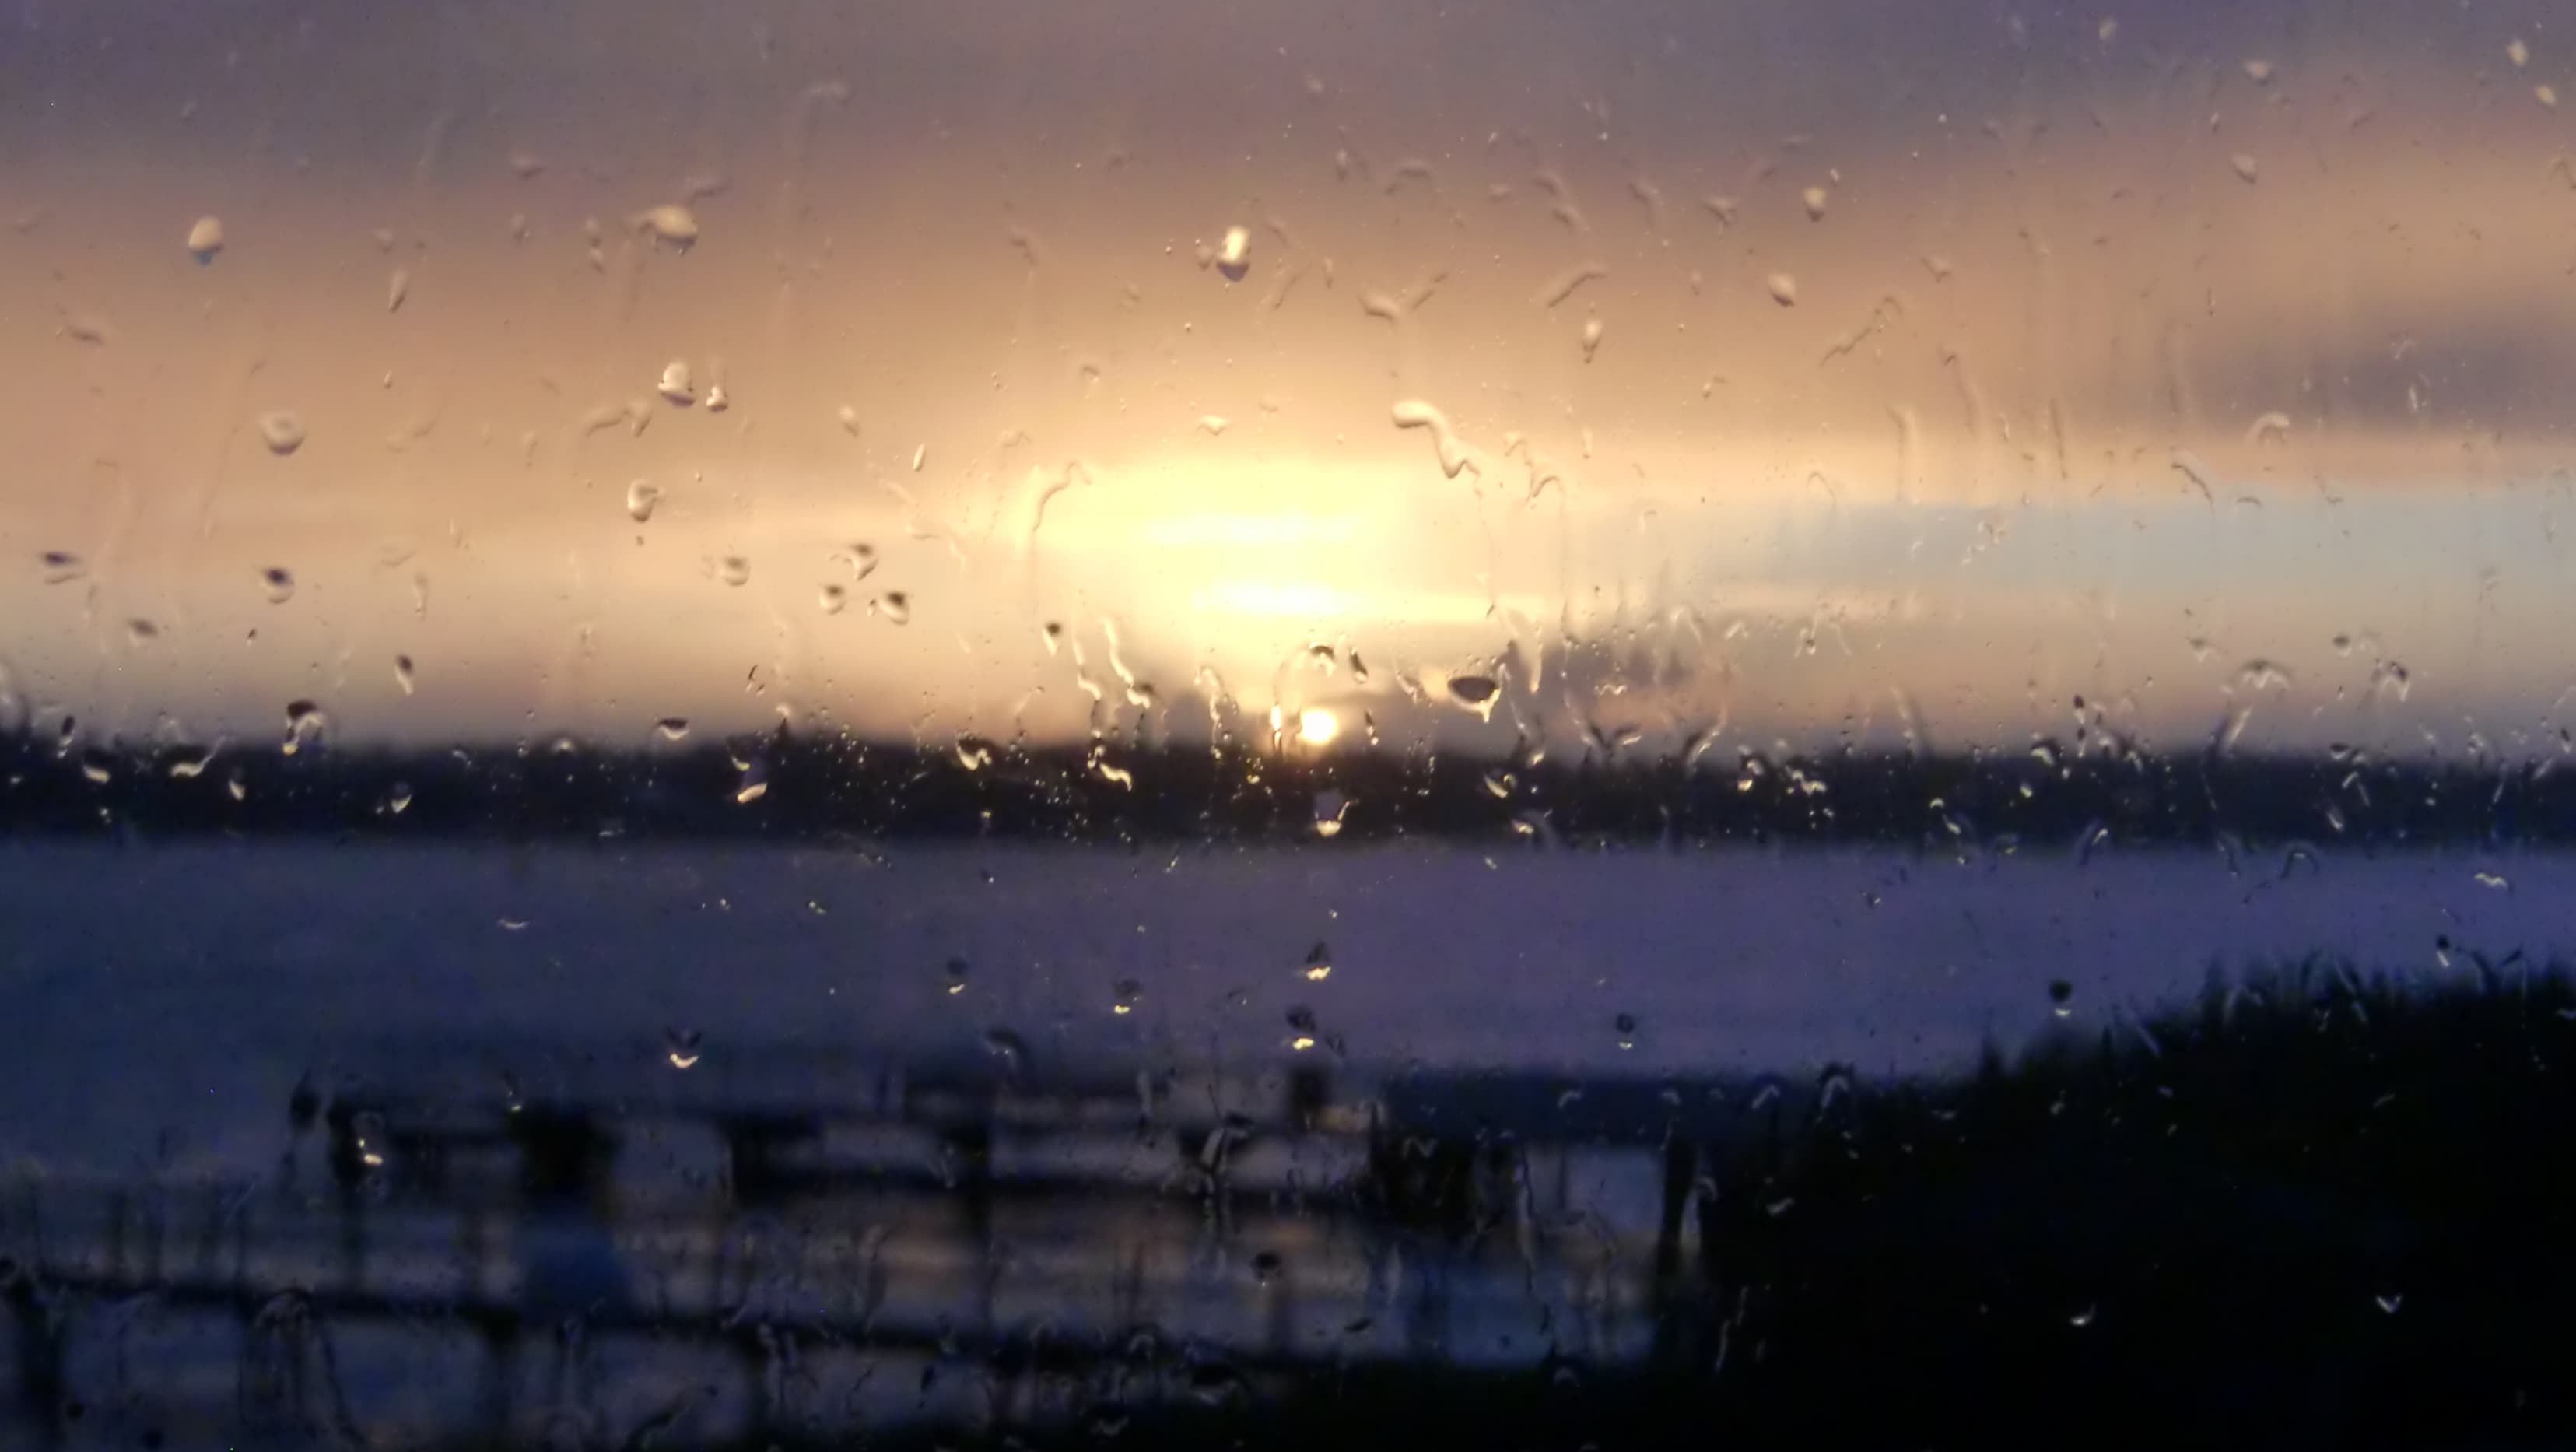 Wenn die Isländer es sich bei Schmuddelwetter drinnen gemütlich machen, dann nennen sie das Fensterwetter, Gluggavedur bzw. Gluggave∂ur eben. Auf dem Bild siehst du die Regentropfen auf unserer Fensterscheibe vor dem Sonnenuntergang auf Island.